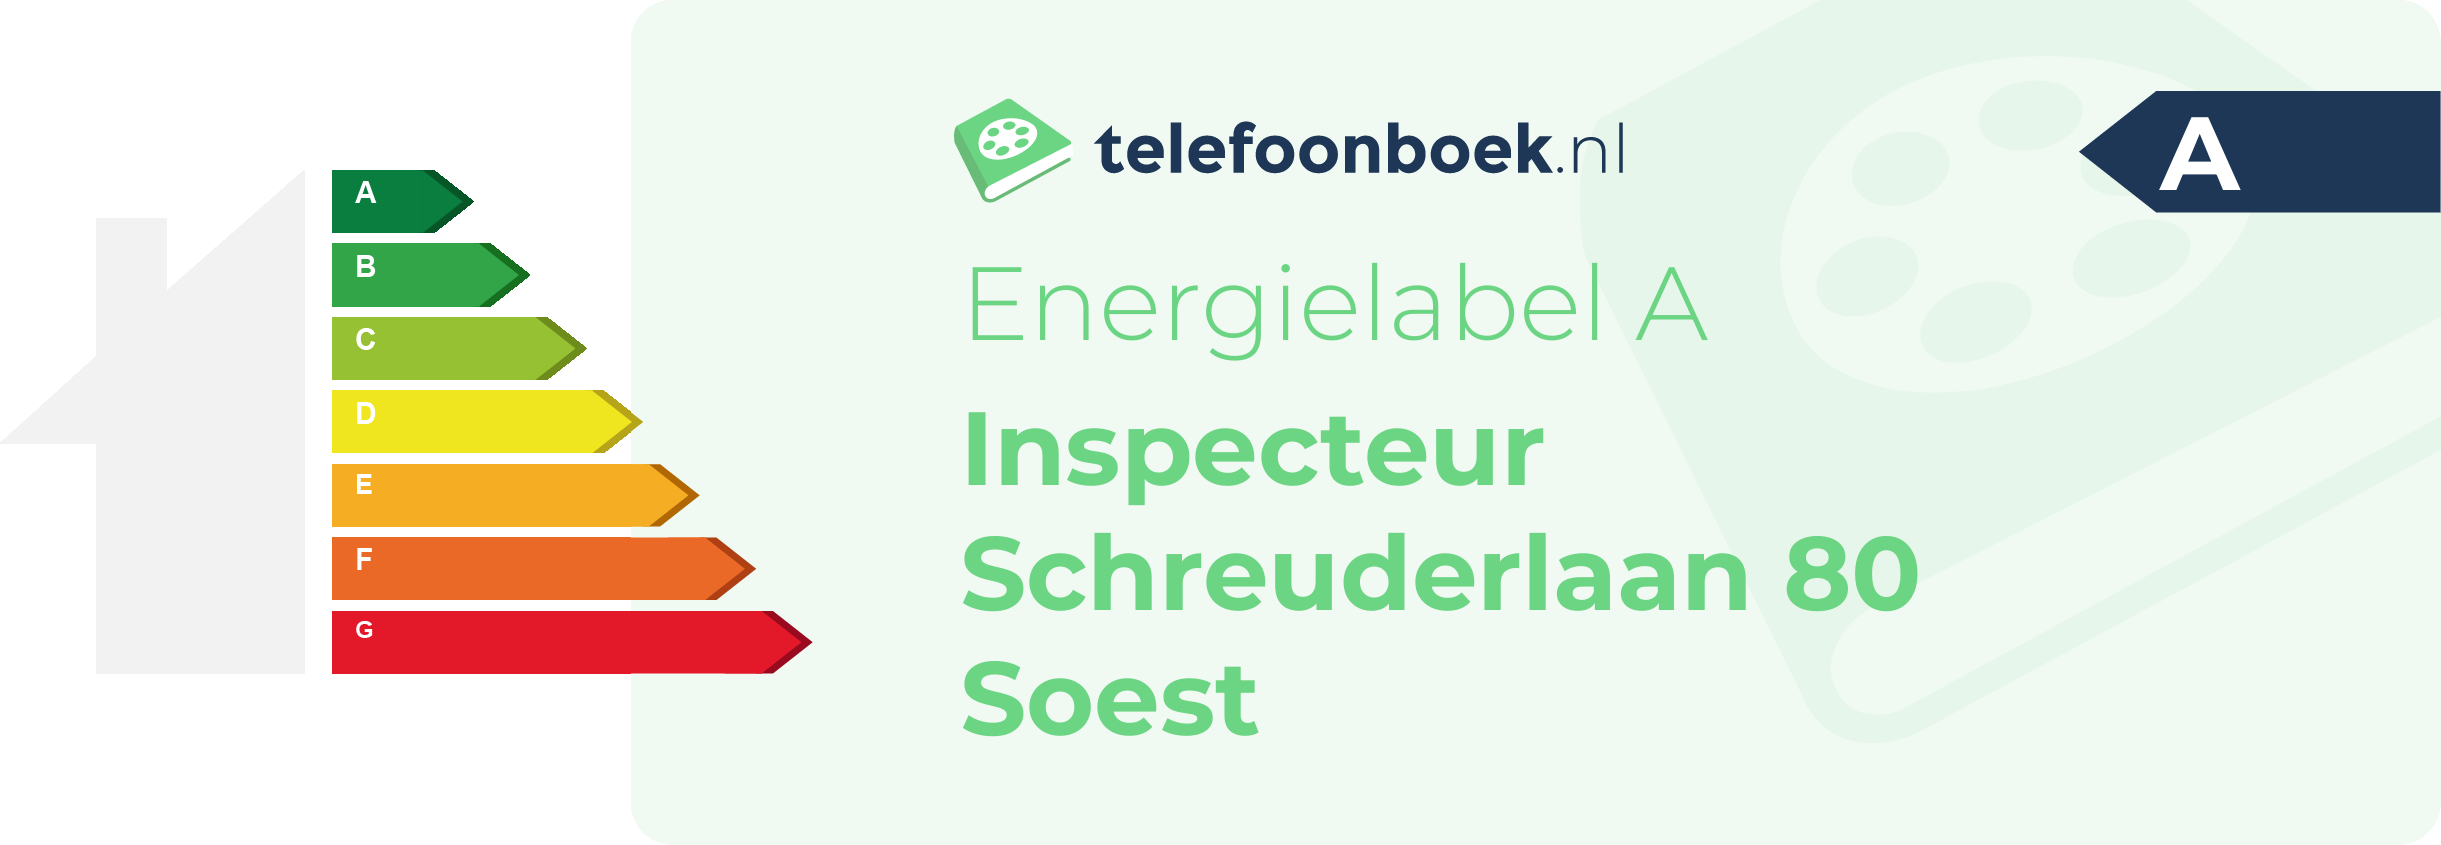 Energielabel Inspecteur Schreuderlaan 80 Soest